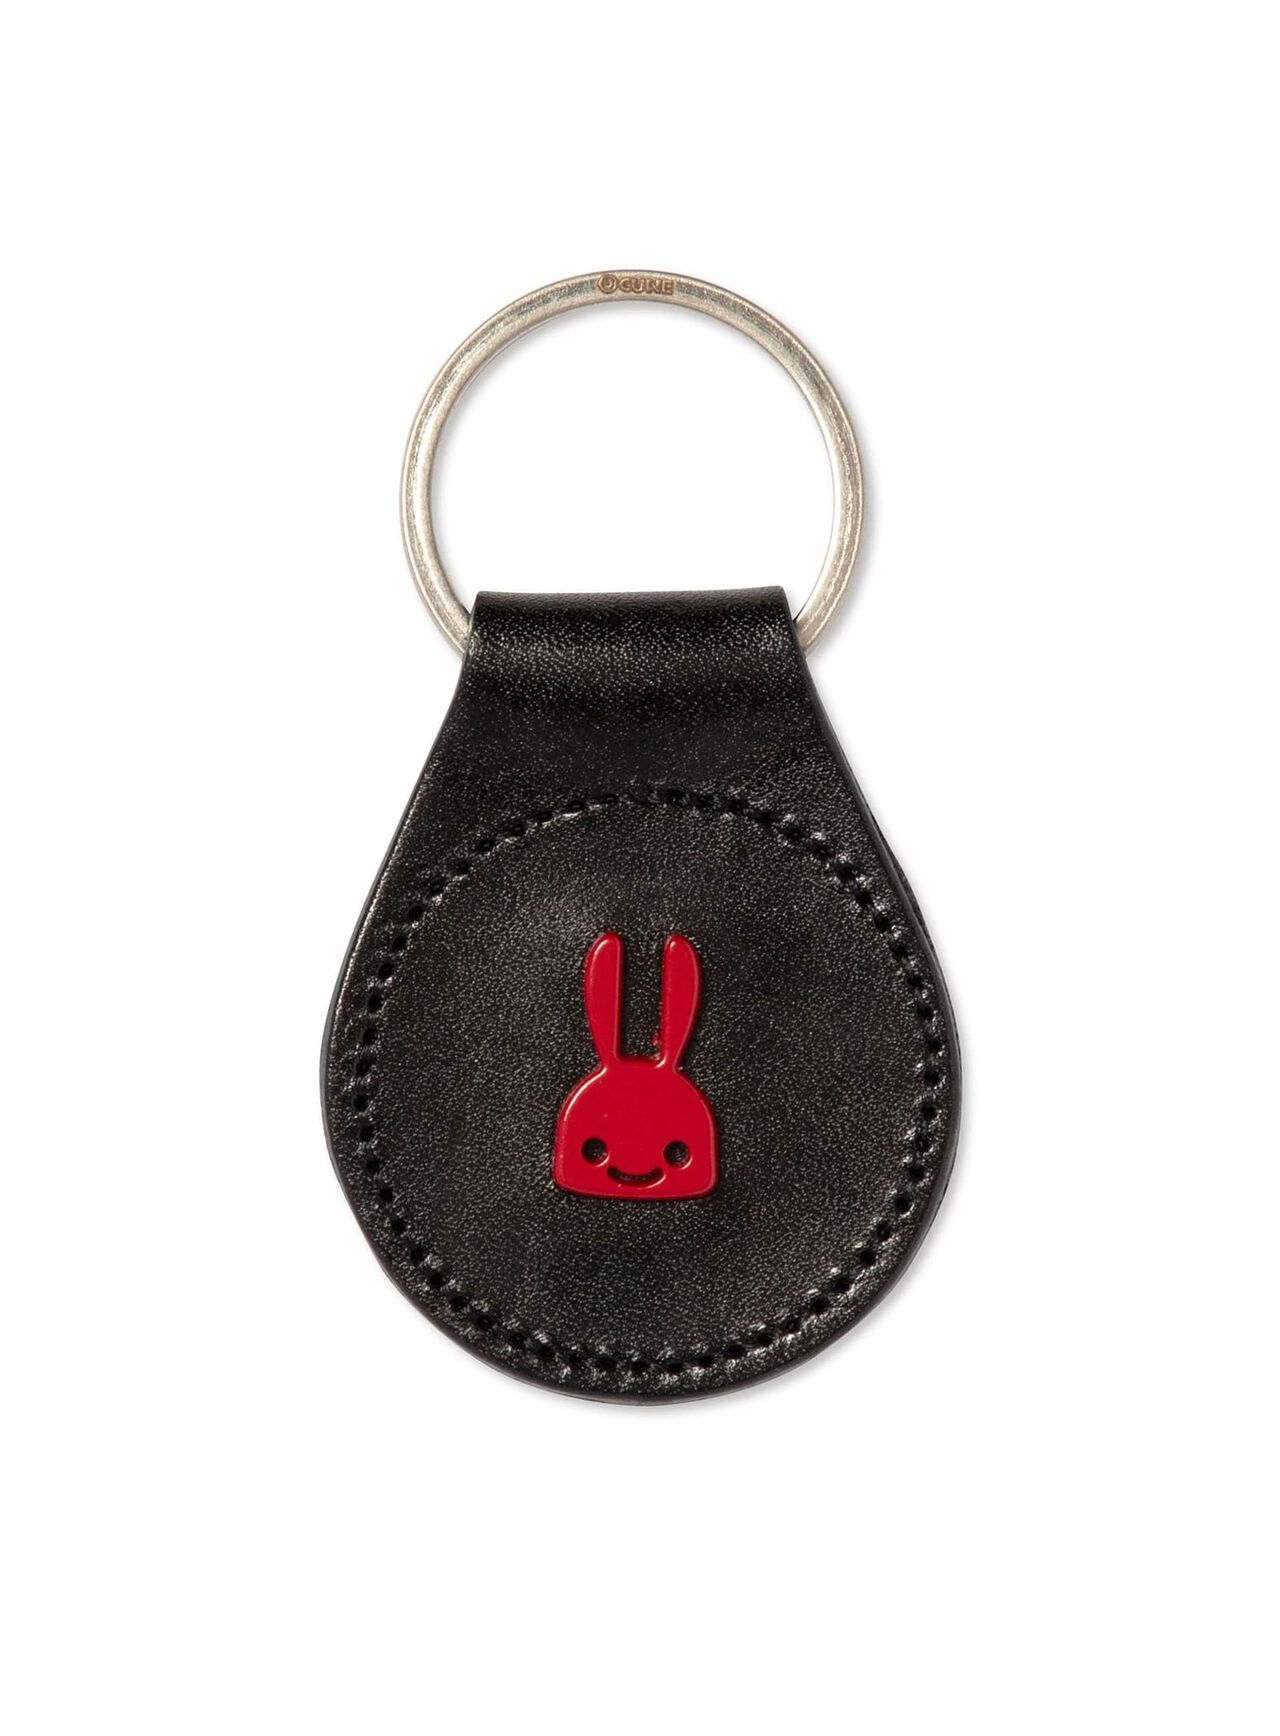 Rabbit studded leather round key ring,ONE, large image number 0